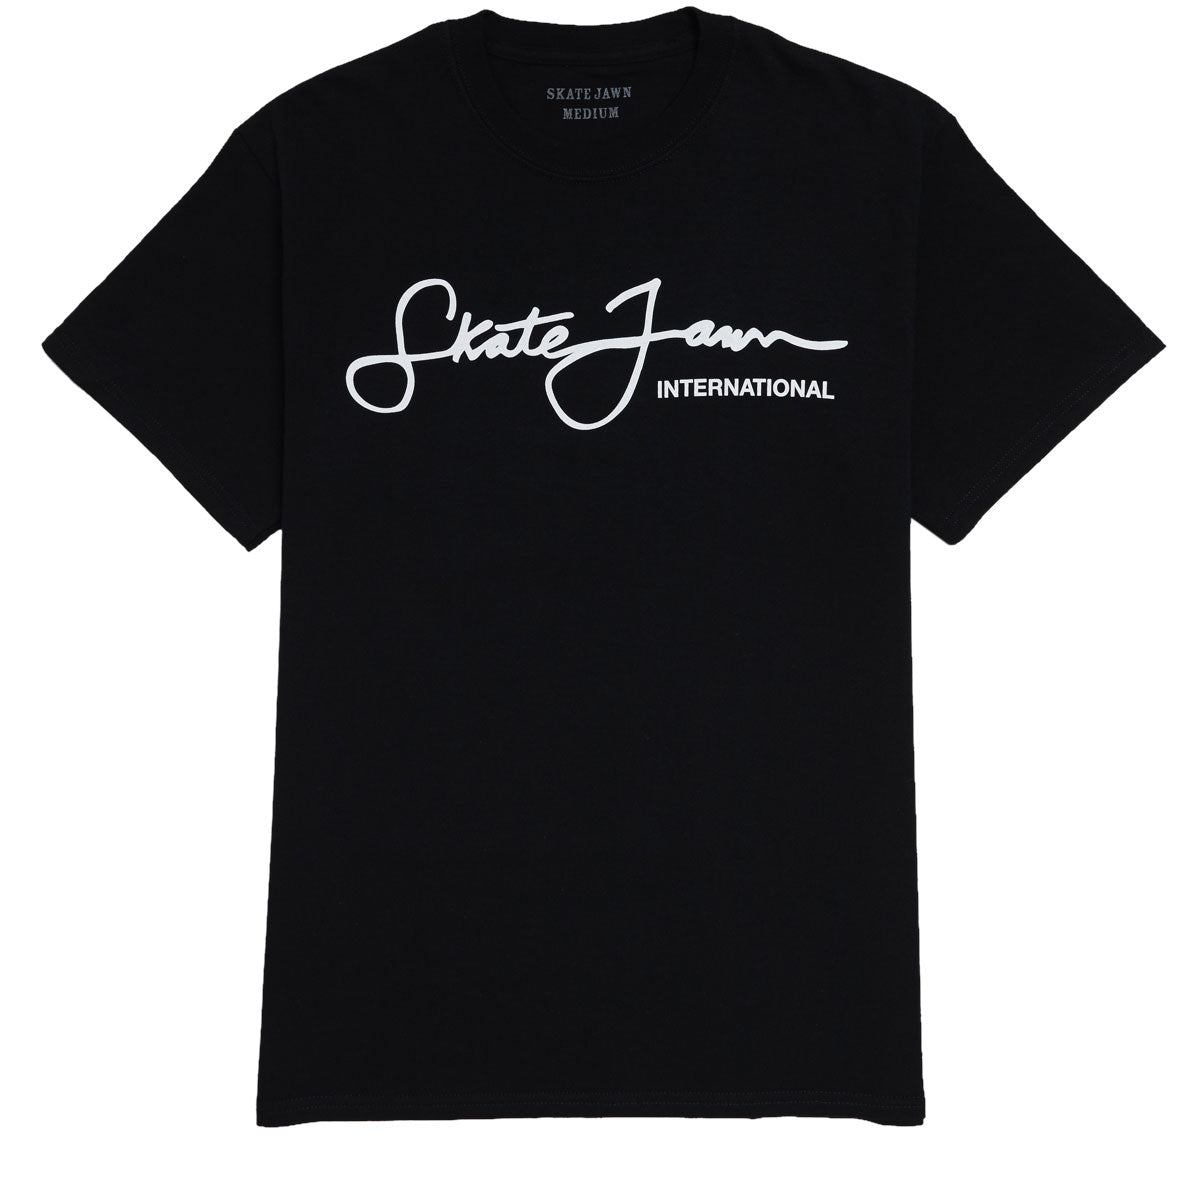 Skate Jawn Sean Jawn T-Shirt - Black image 1